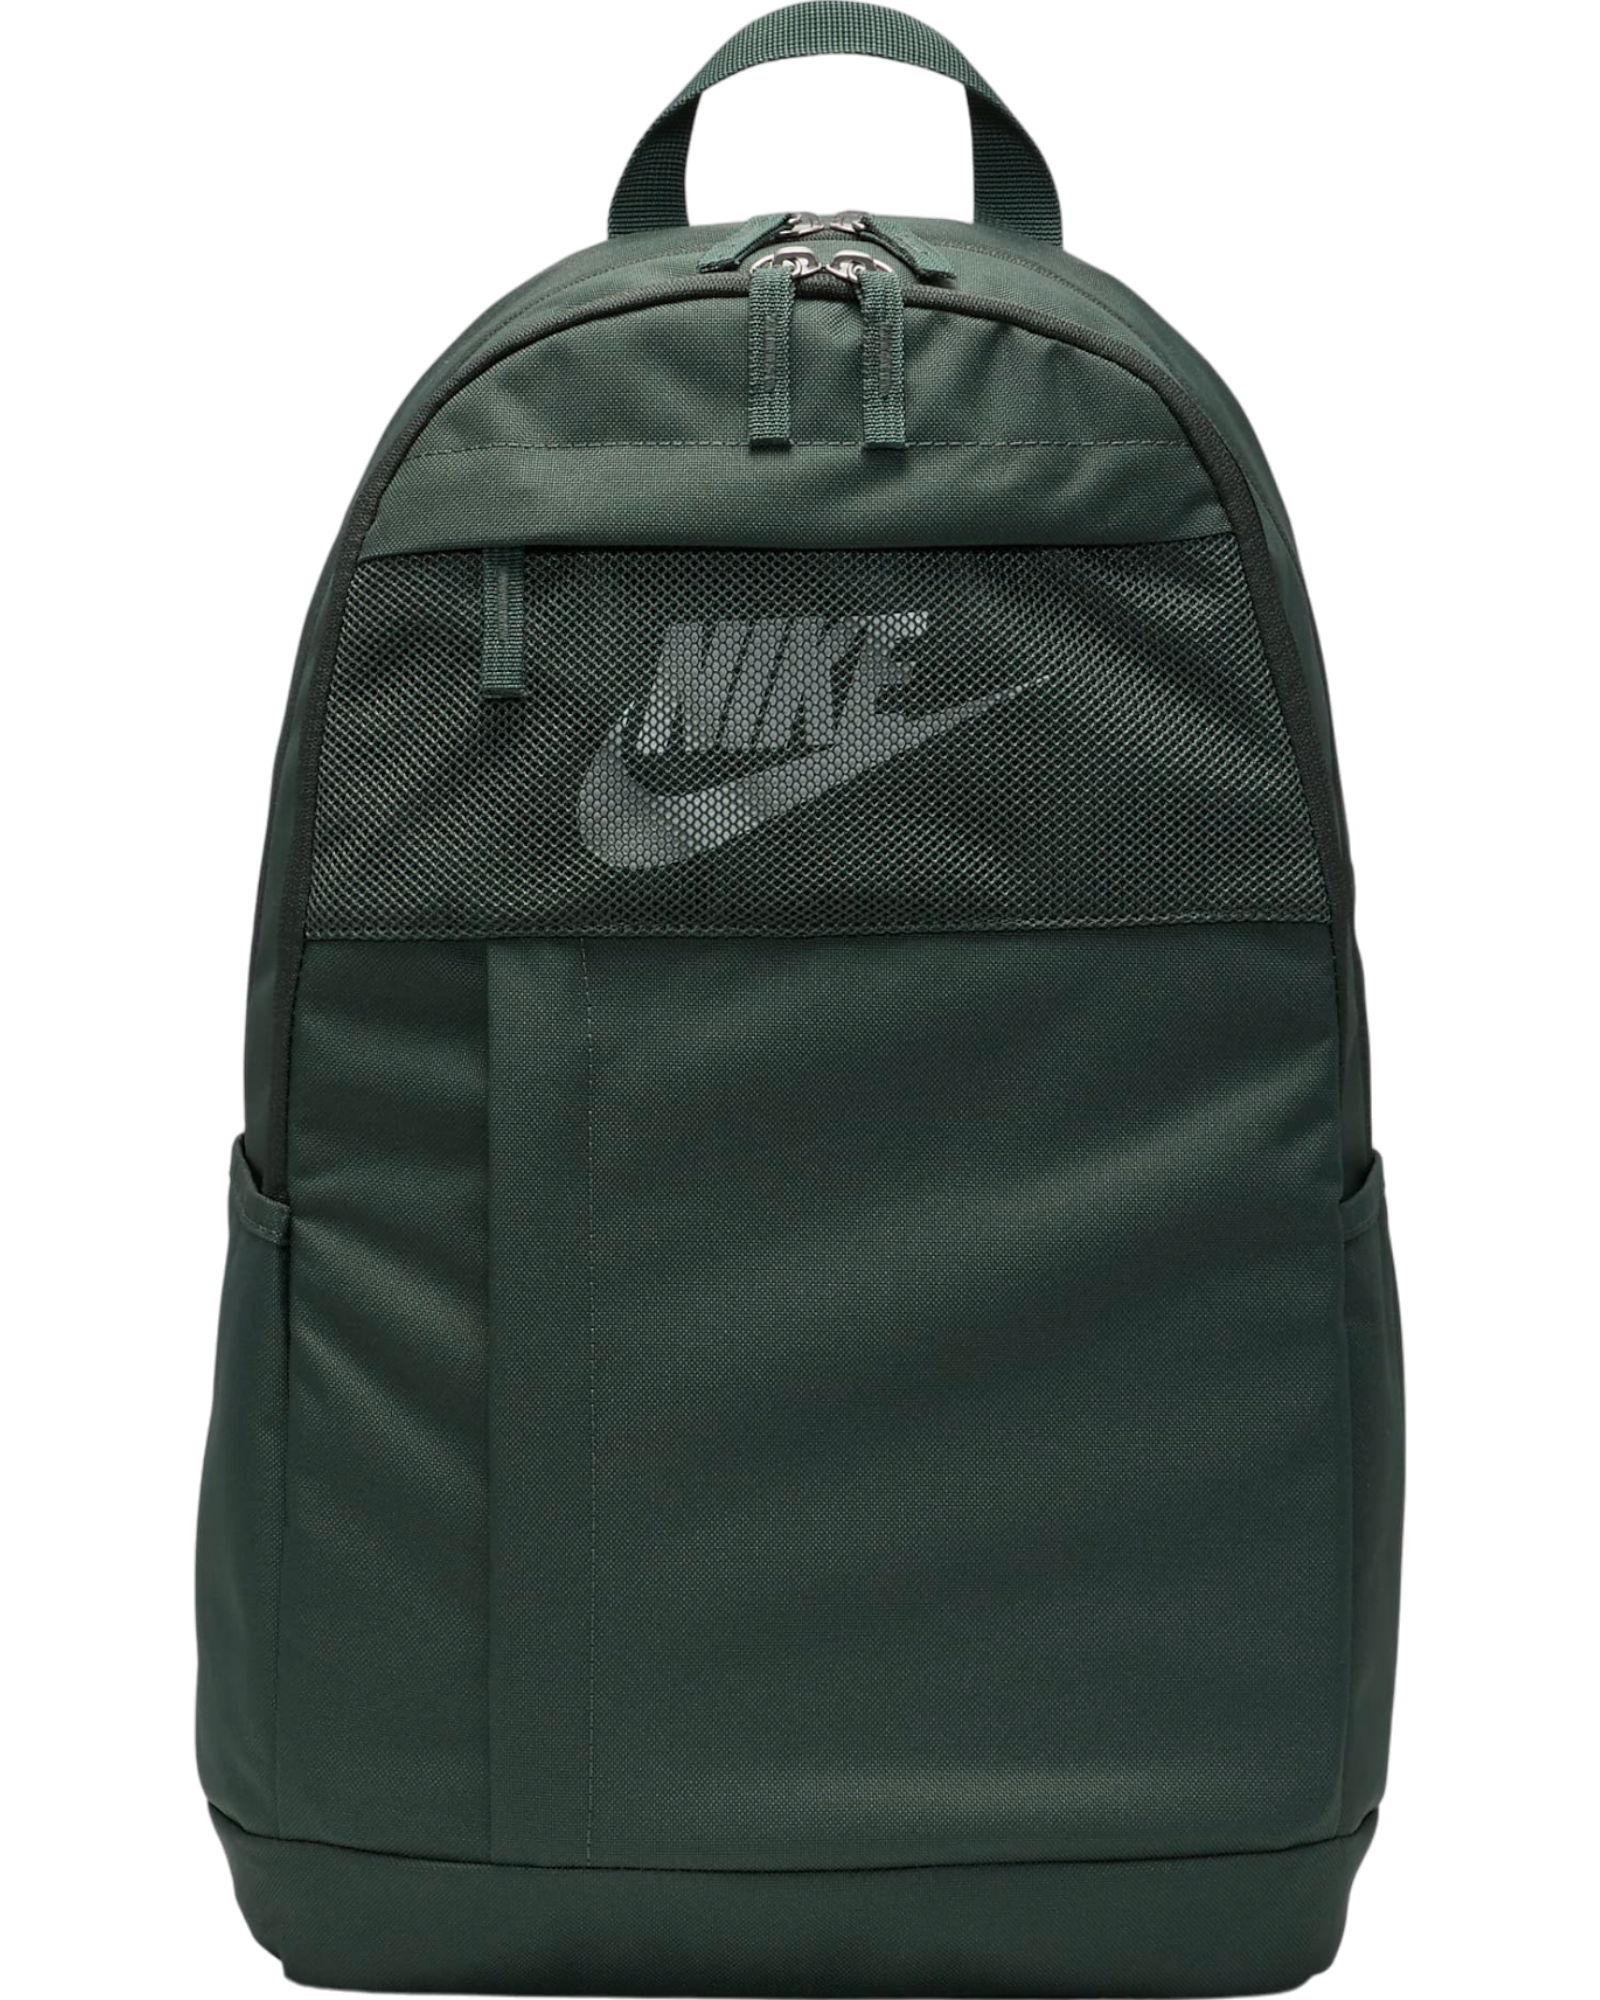 Rucsac Nike Elemental Backpack